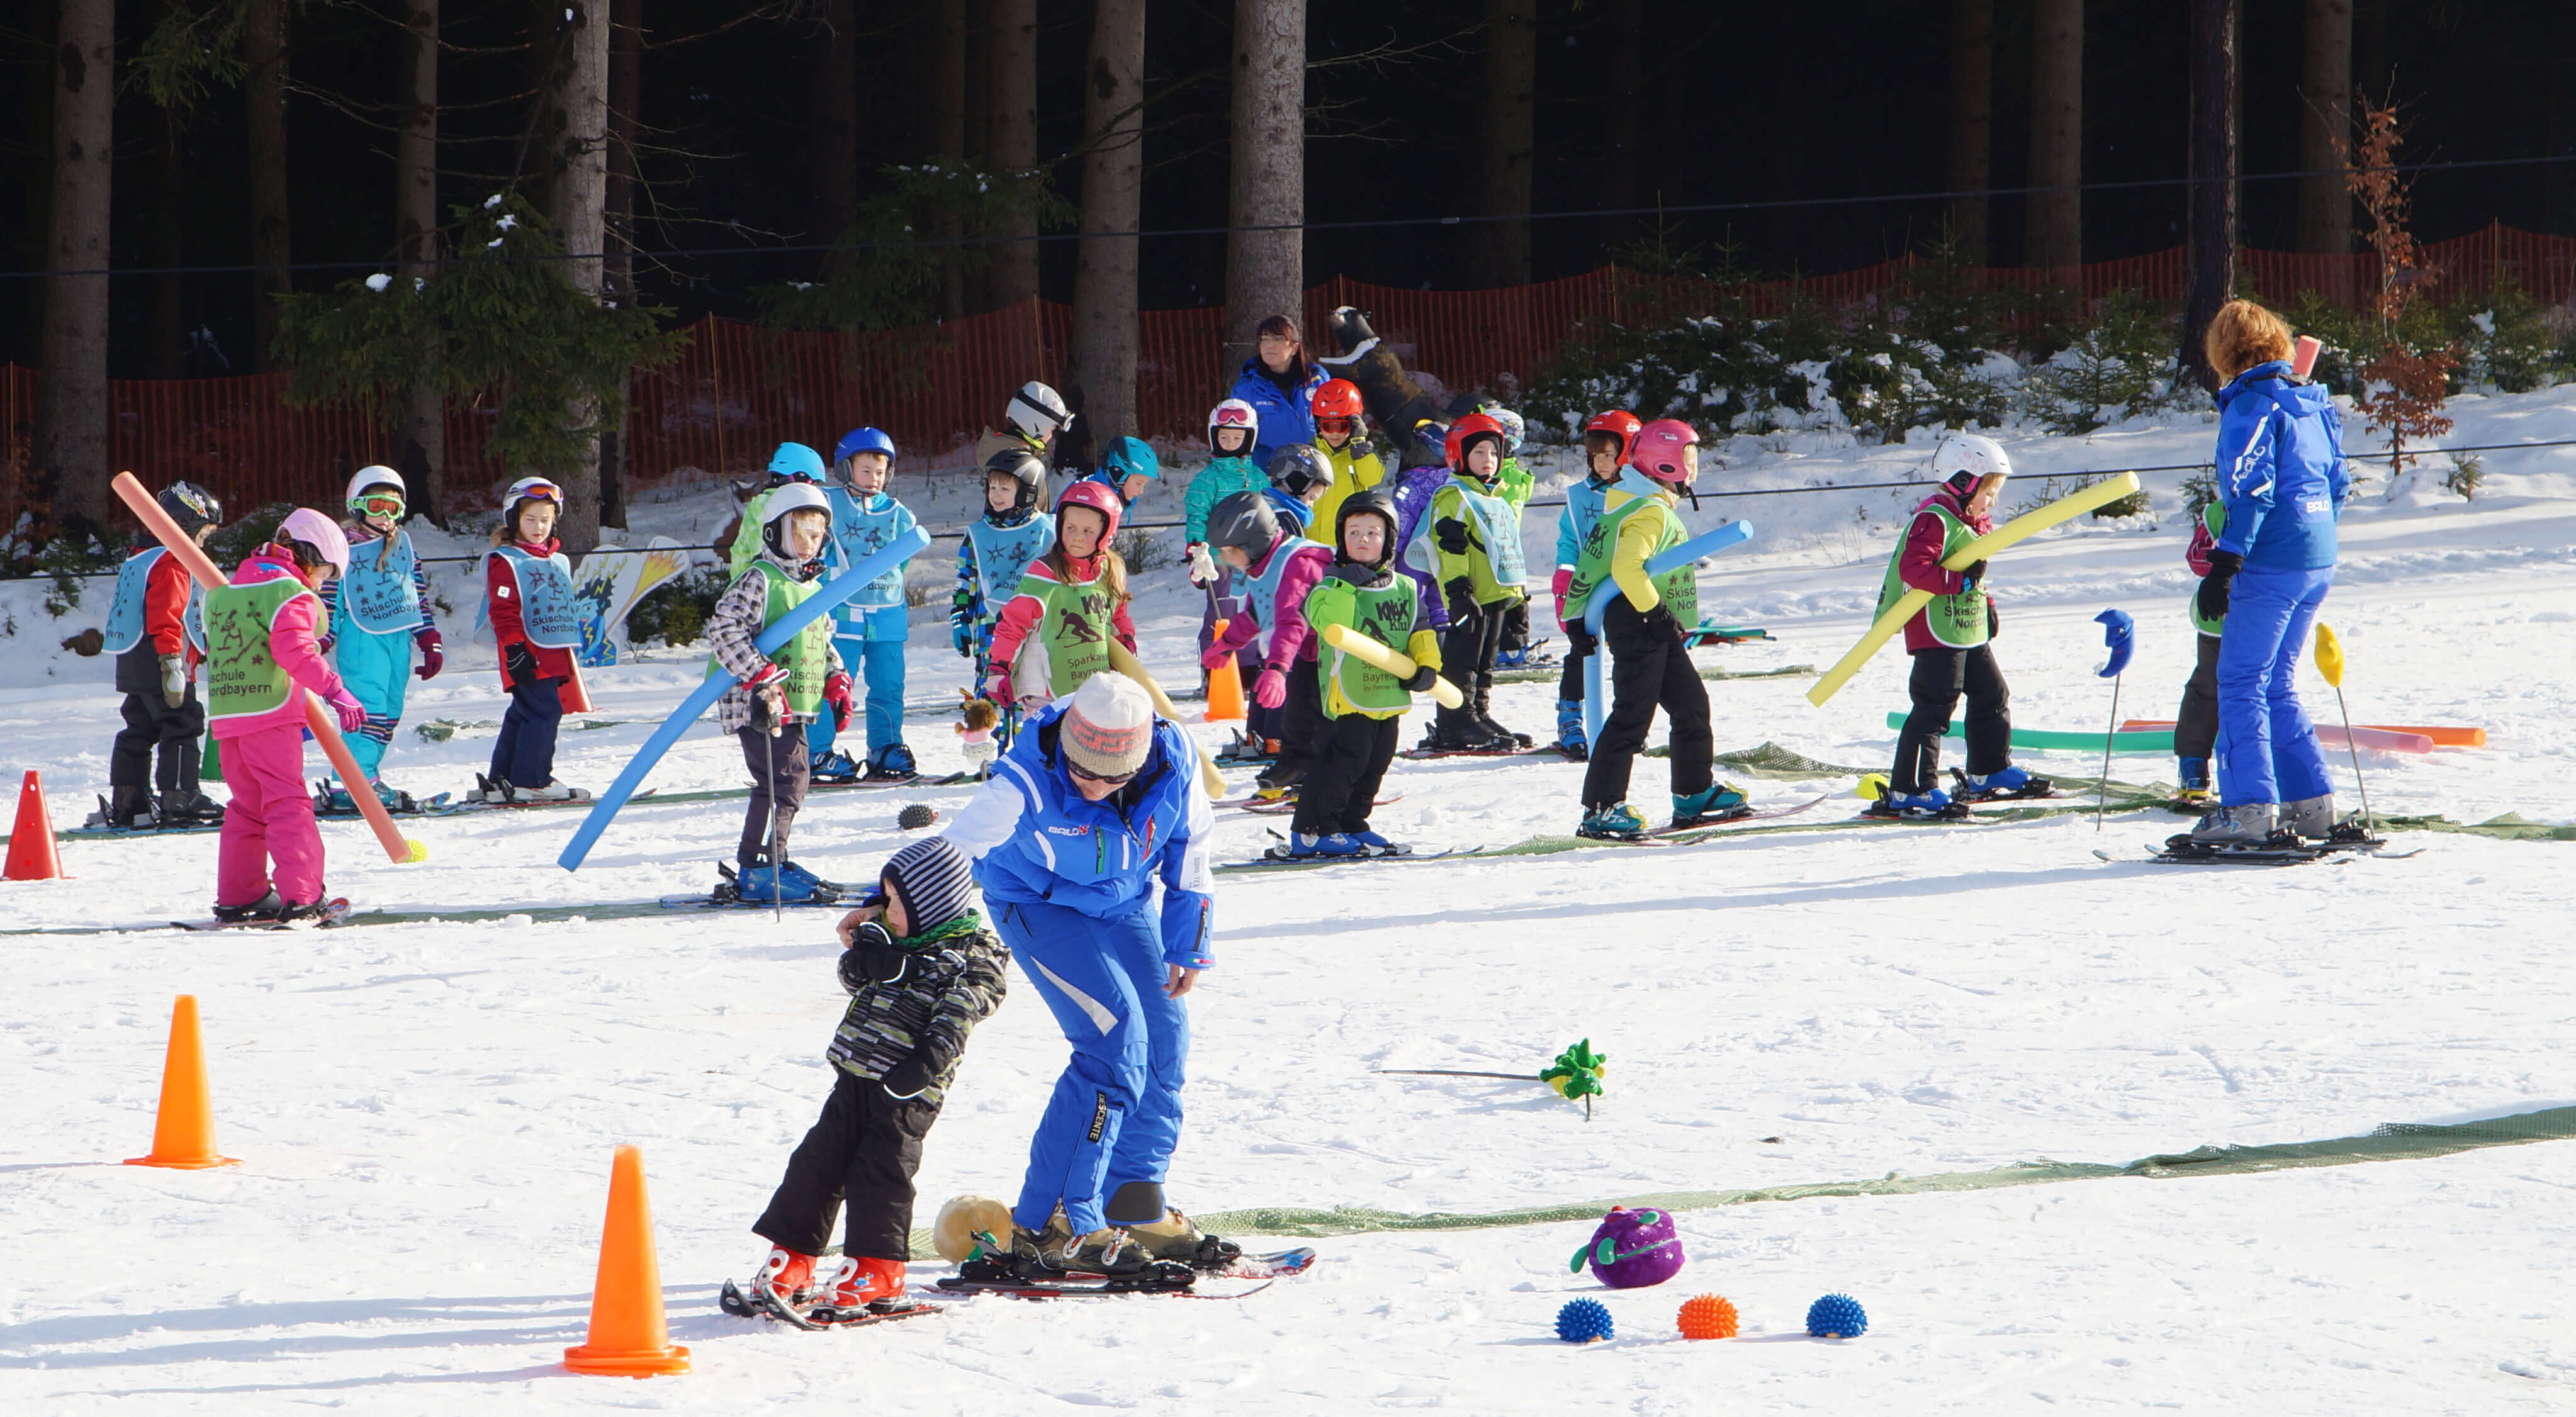 Kinderprogramm in der Schneesportschule, Ski Skifahren Kinder Pylonen